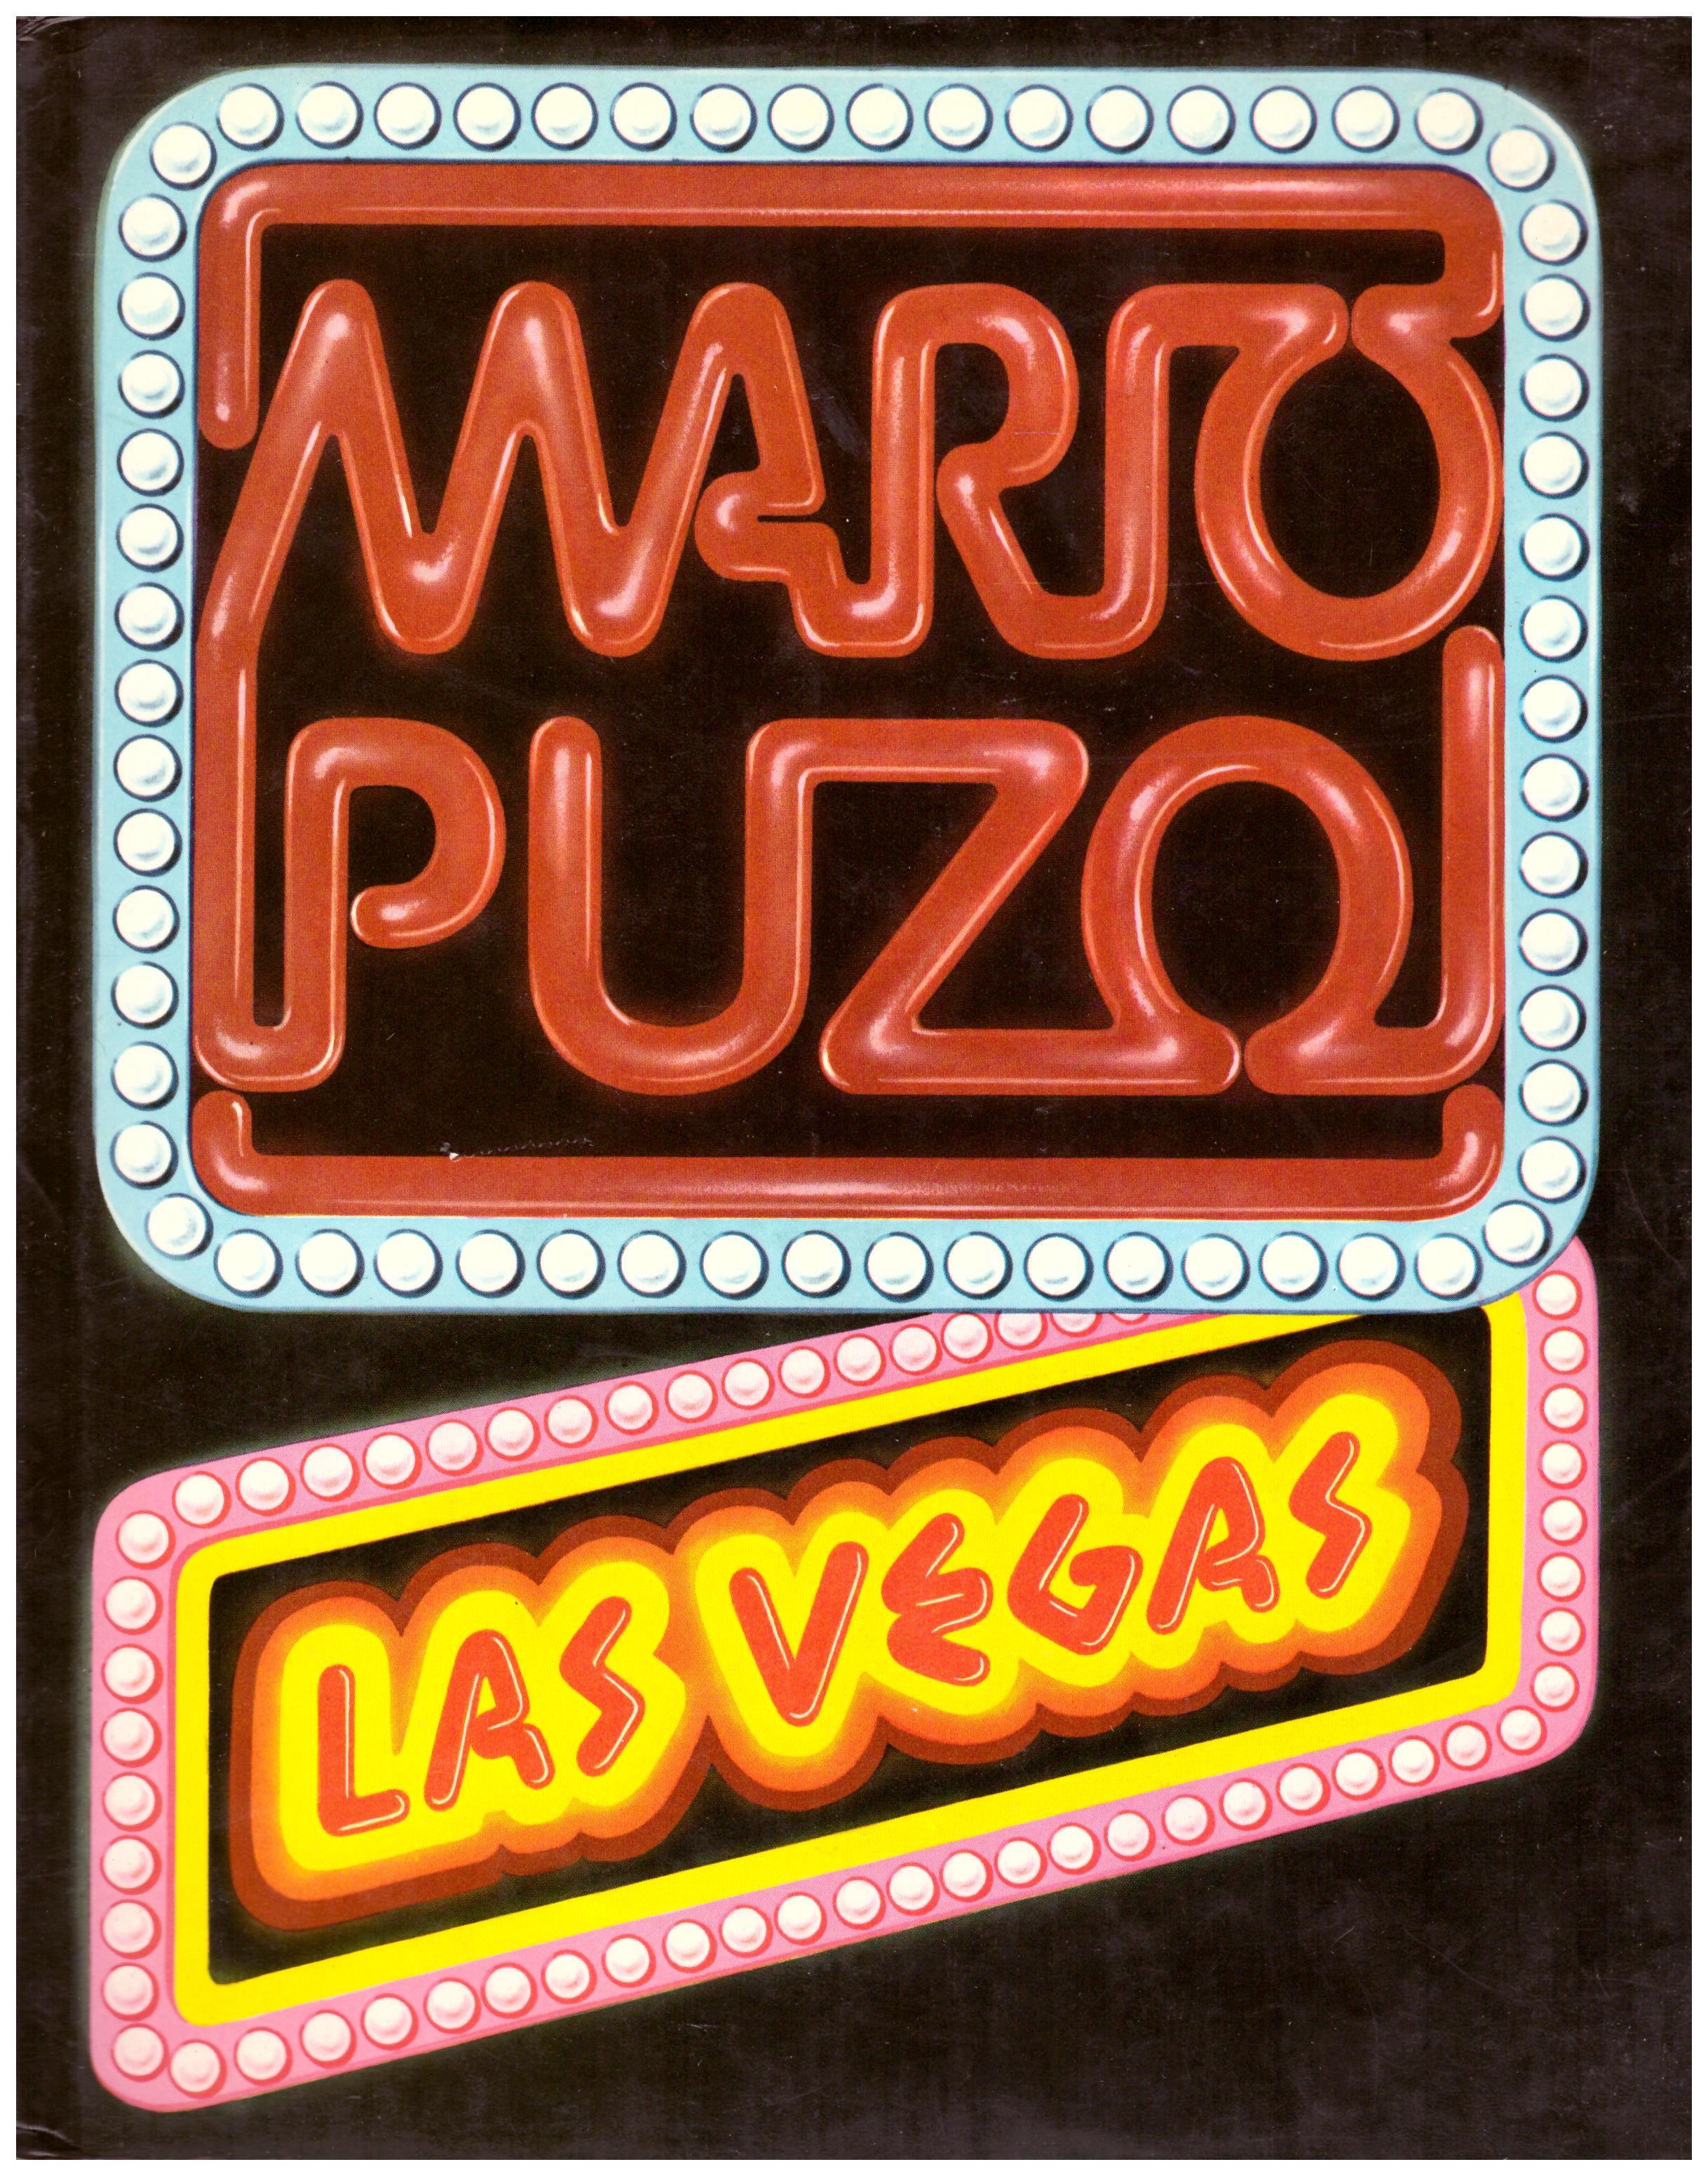 Titolo: Las Vegas Autore : Mario Puzo Editore: n.d.